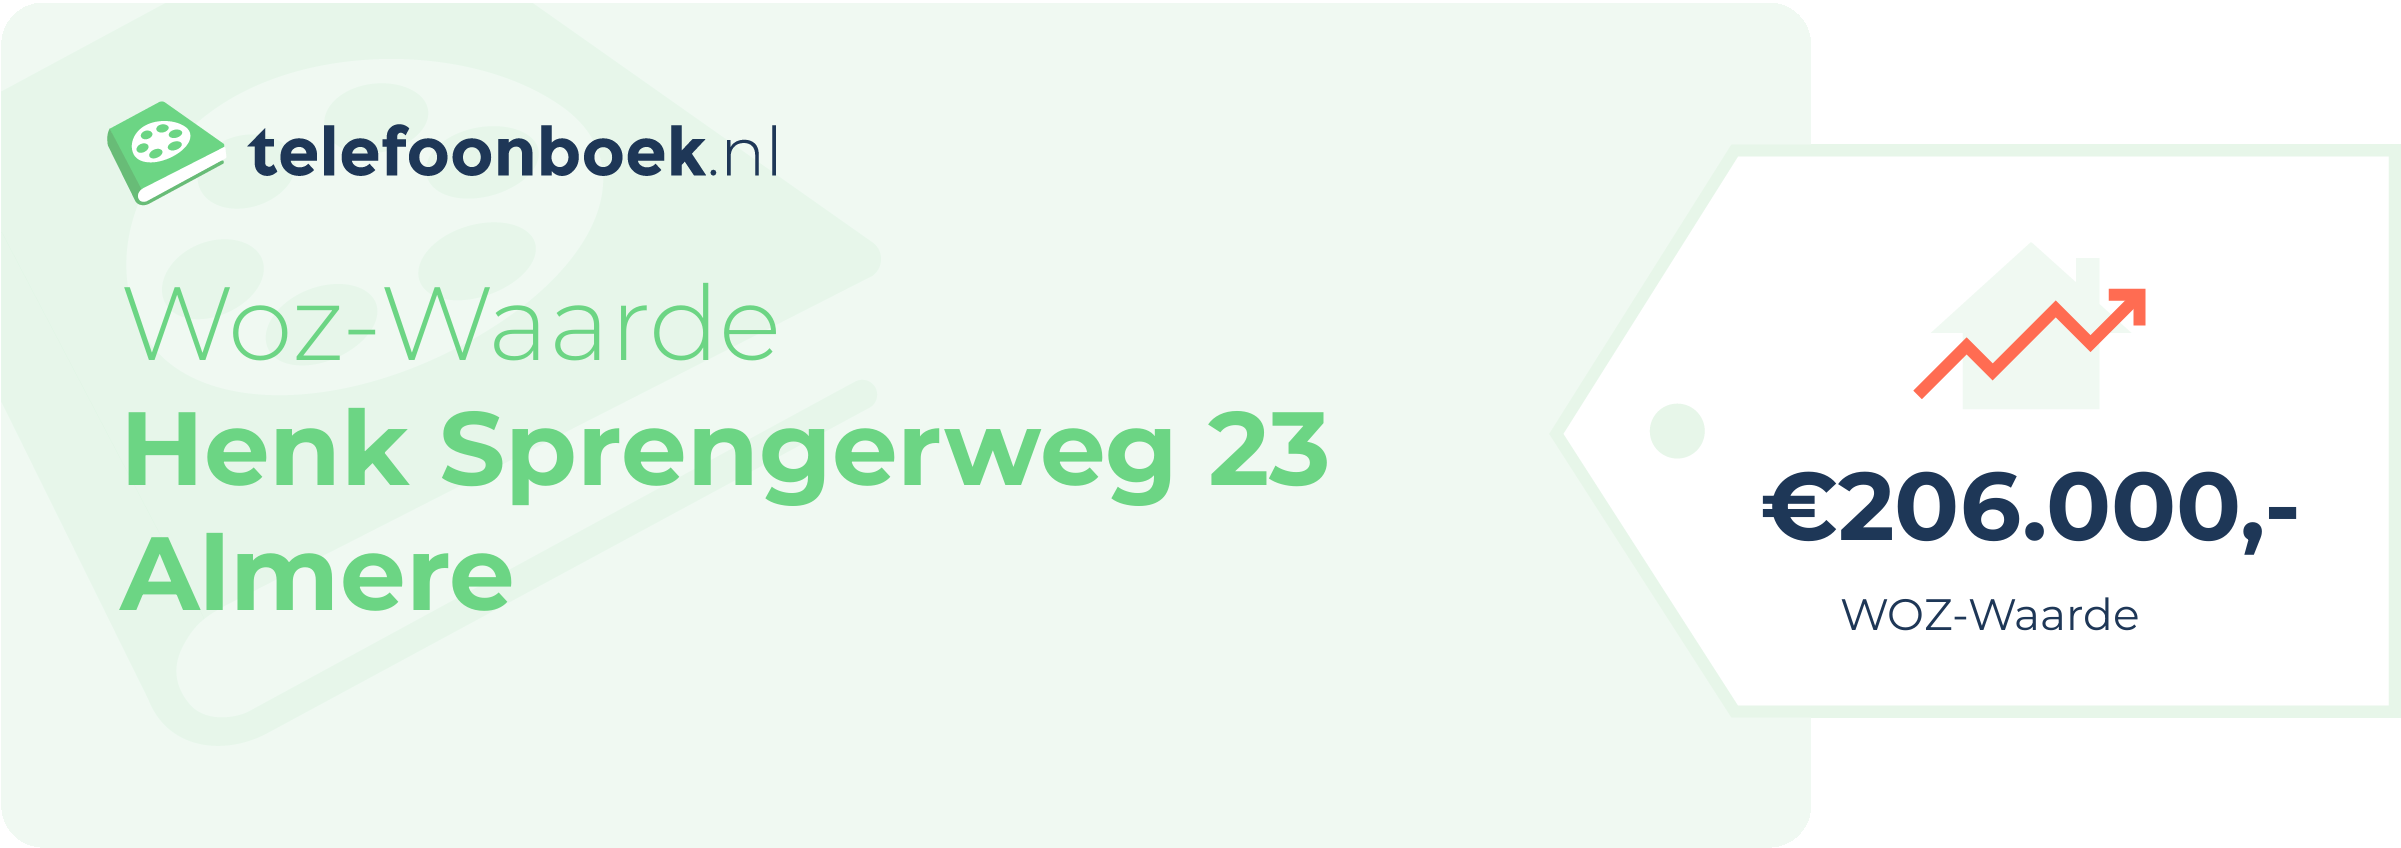 WOZ-waarde Henk Sprengerweg 23 Almere